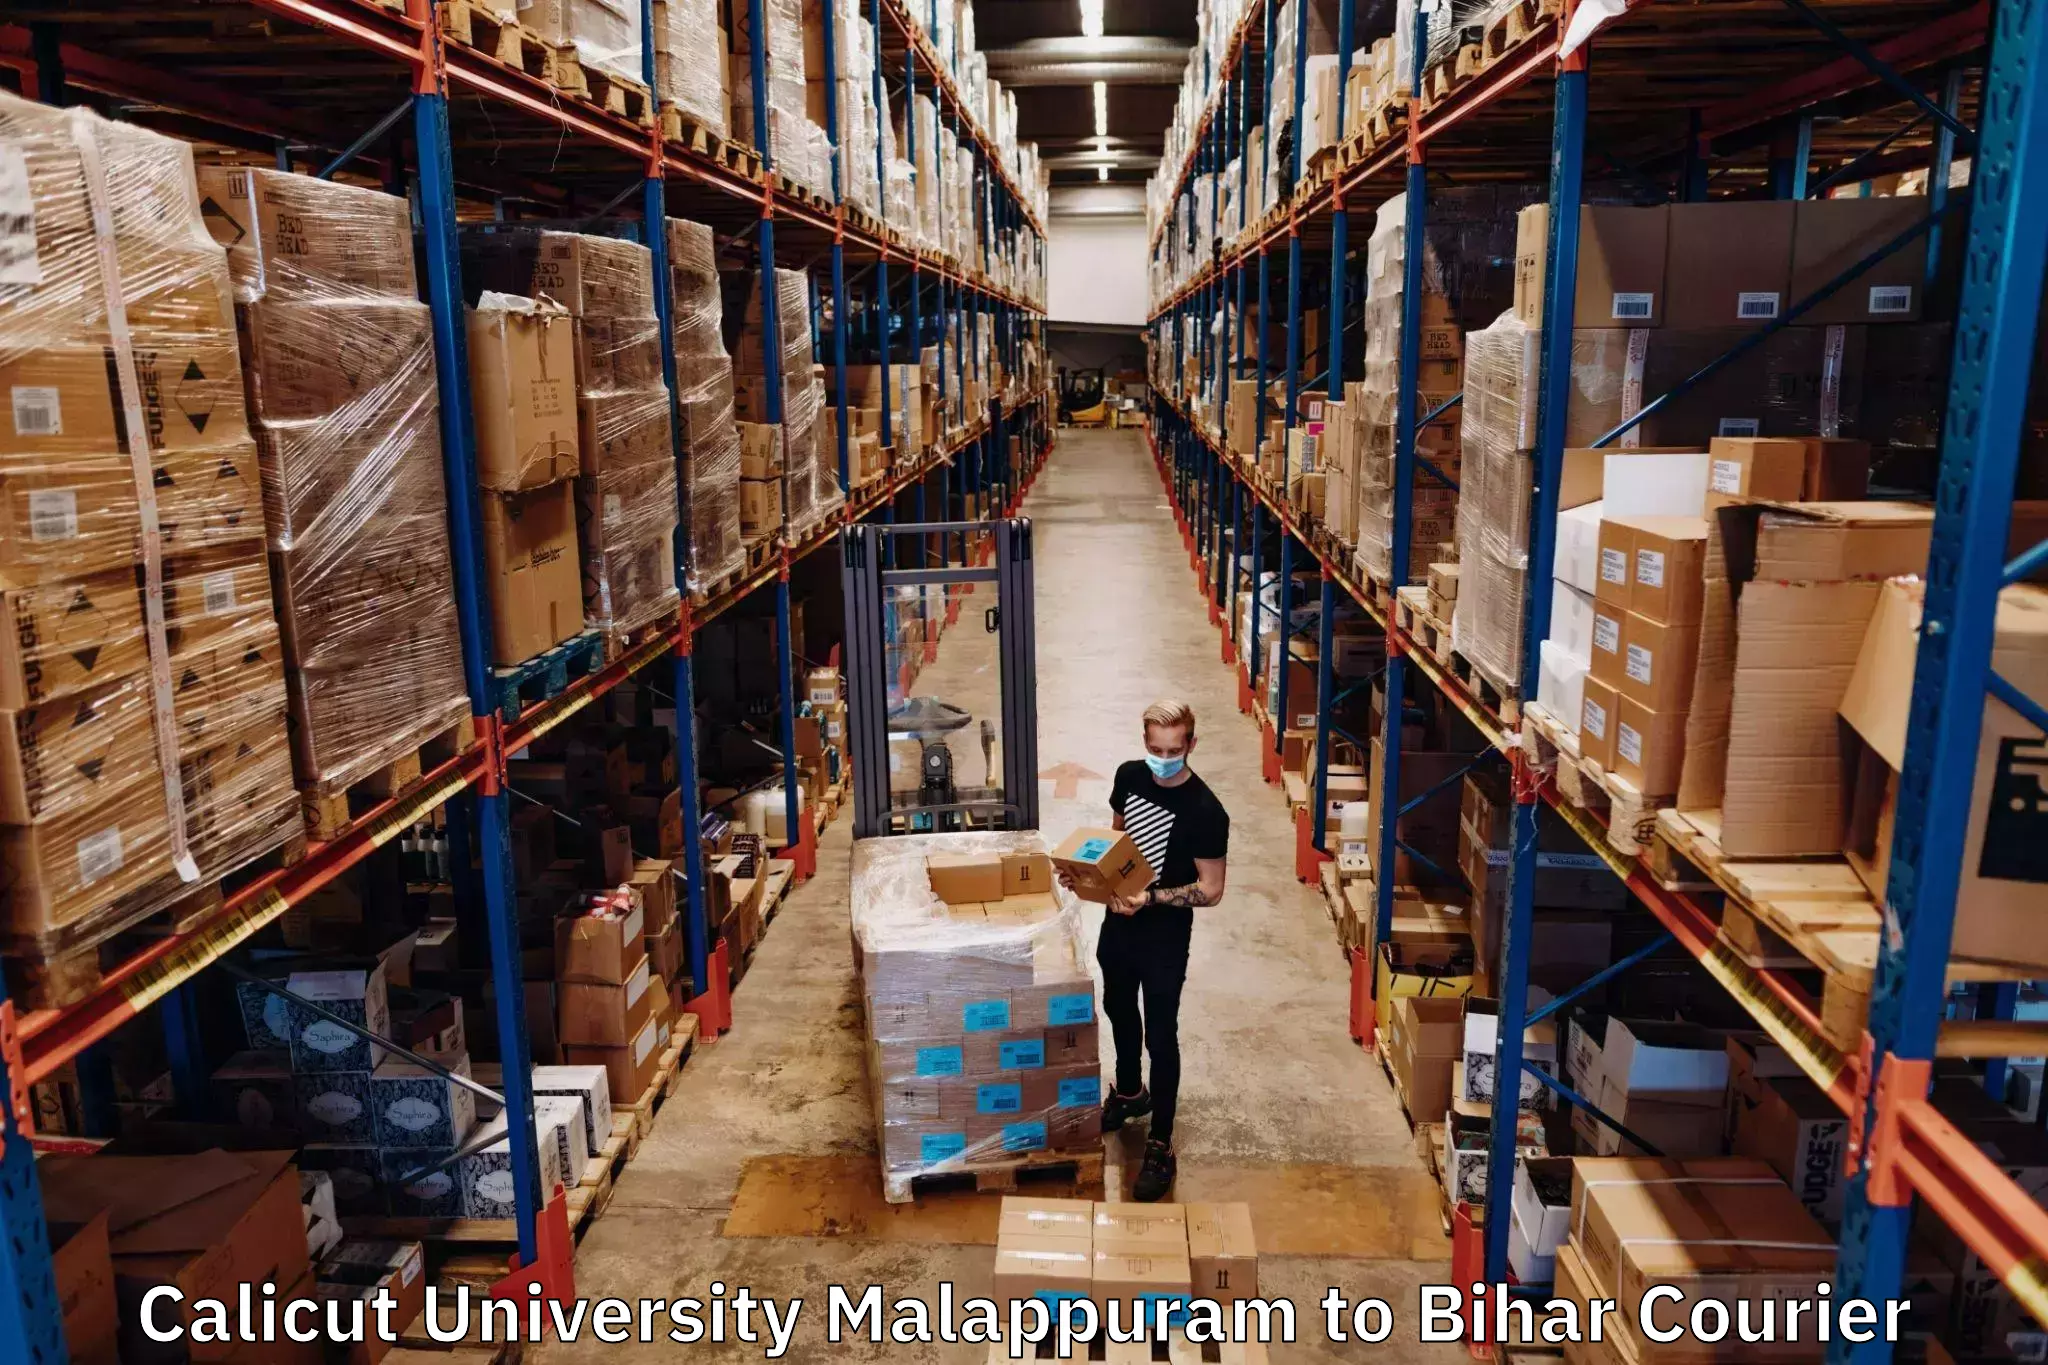 Sustainable courier practices Calicut University Malappuram to Kishanganj